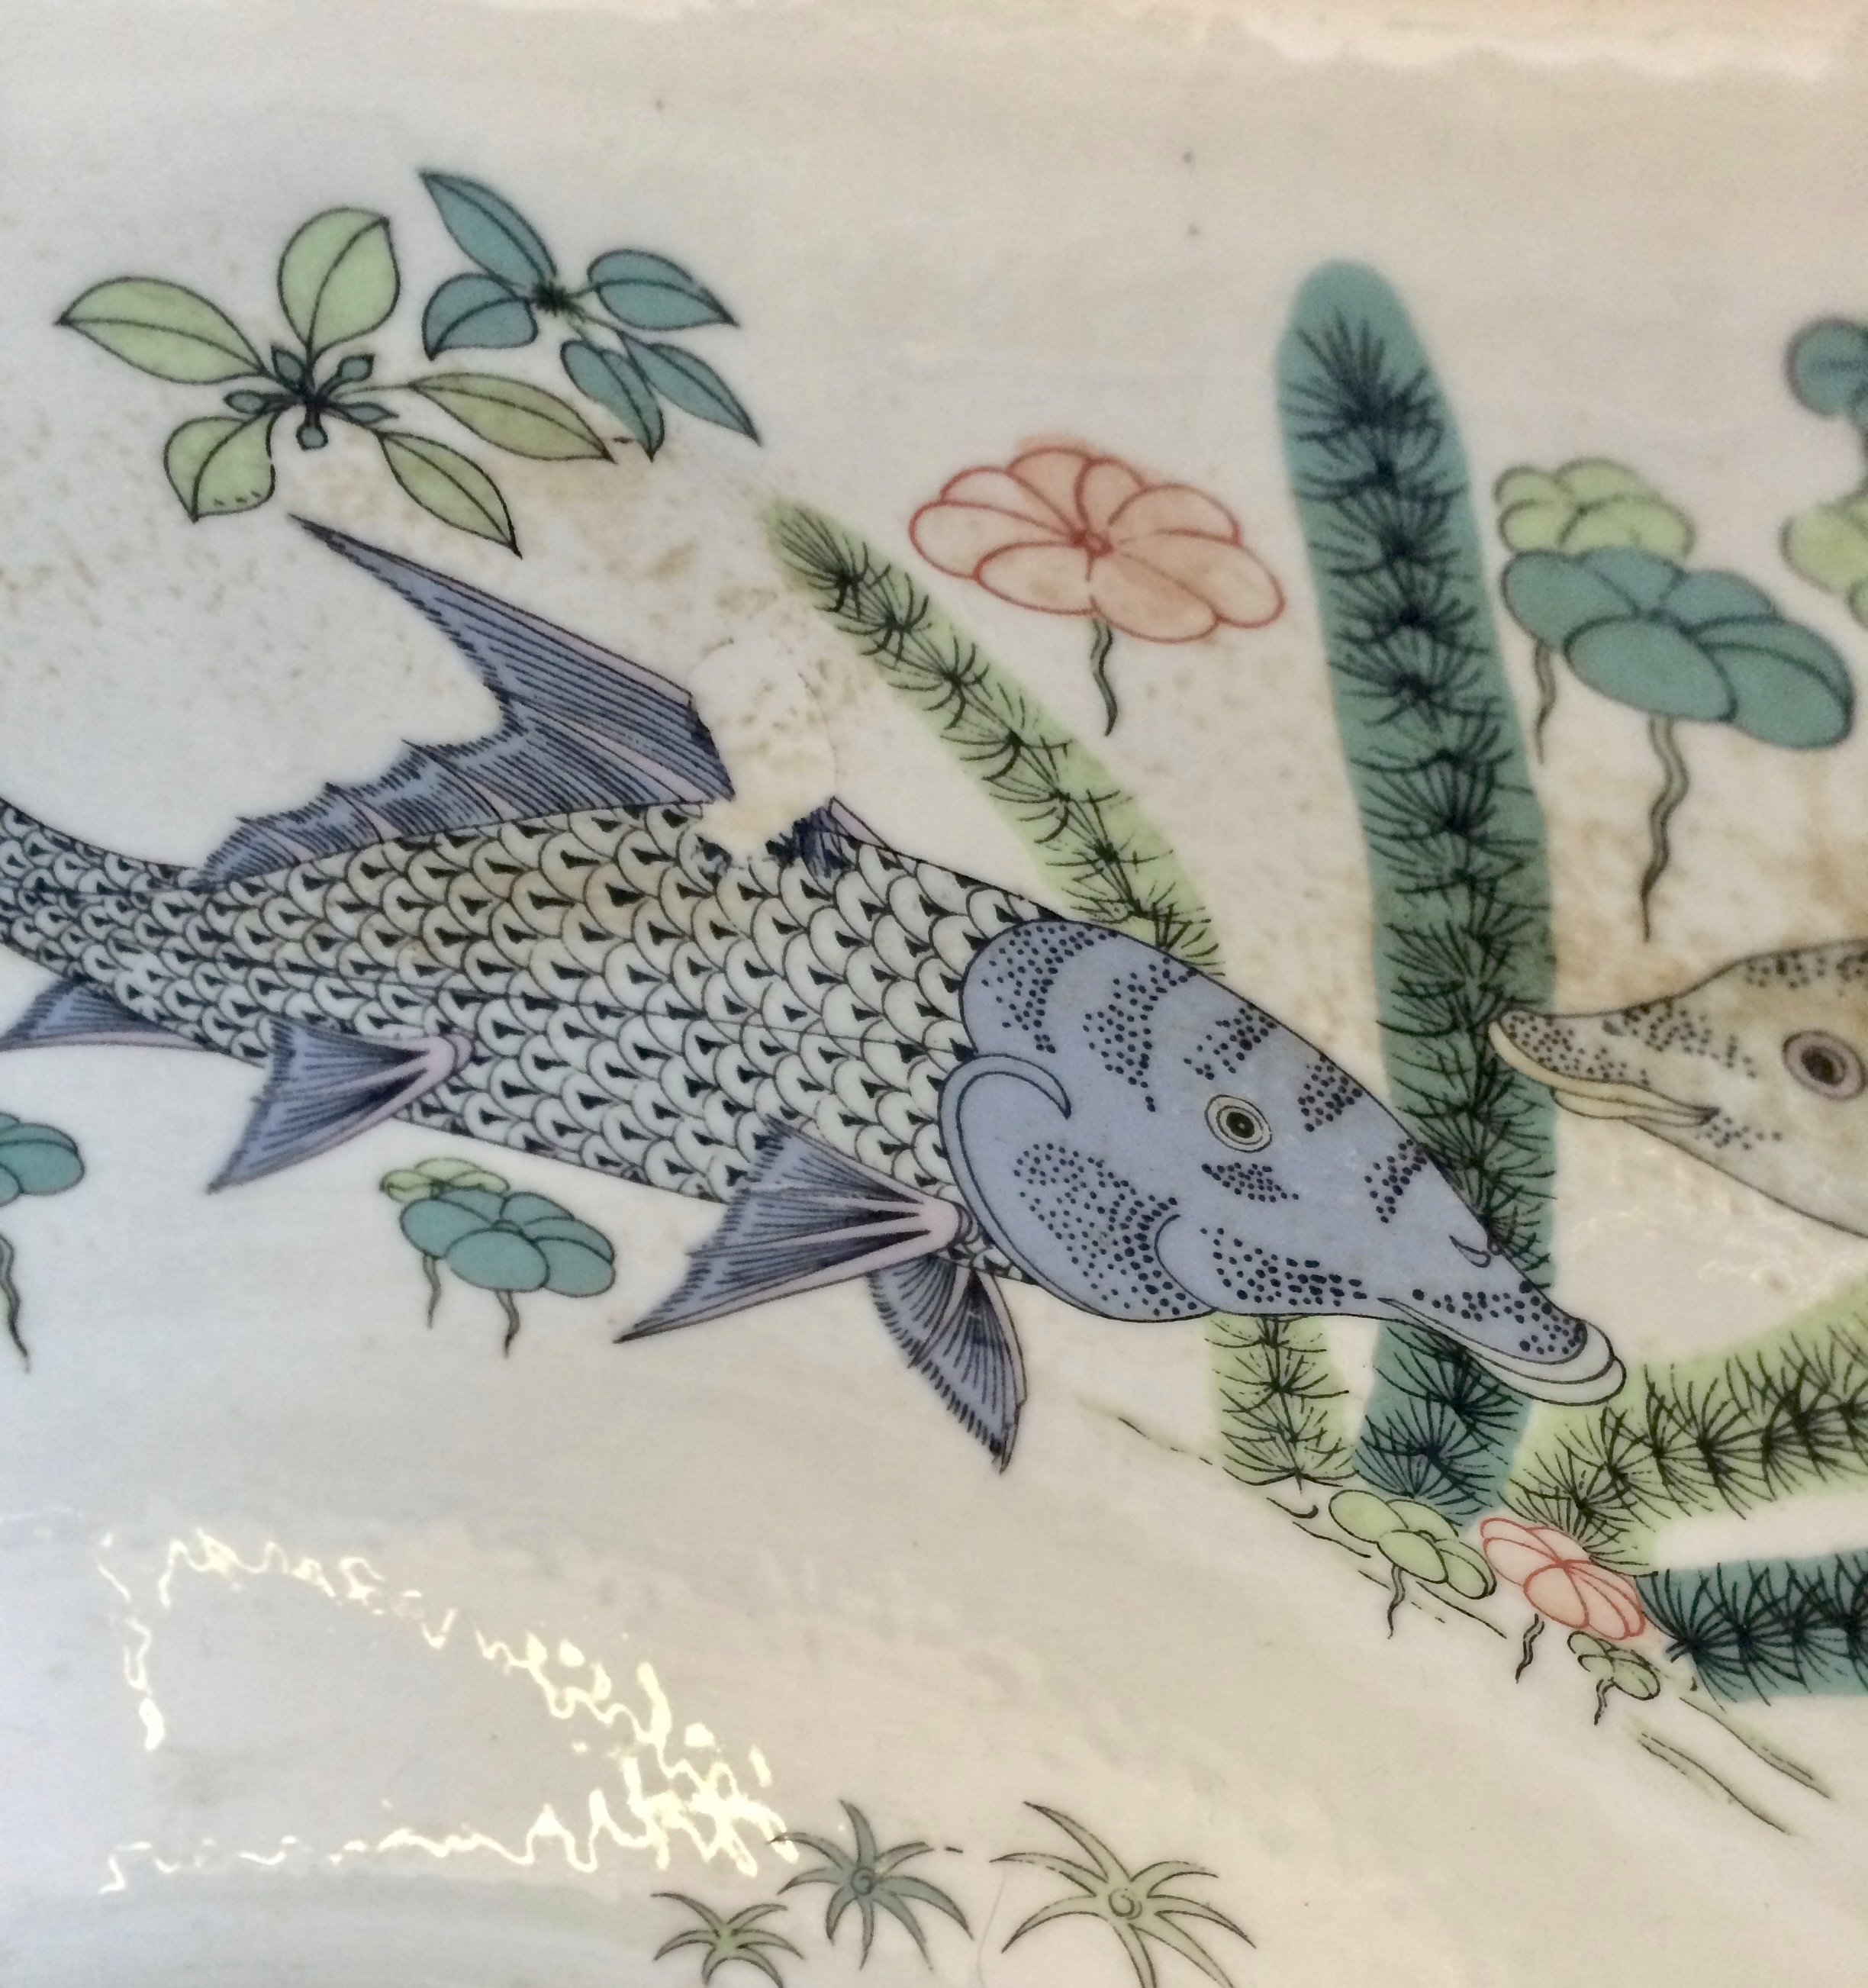 Аквариум для рыб, Китай, кон. XIX - нач. XX вв.